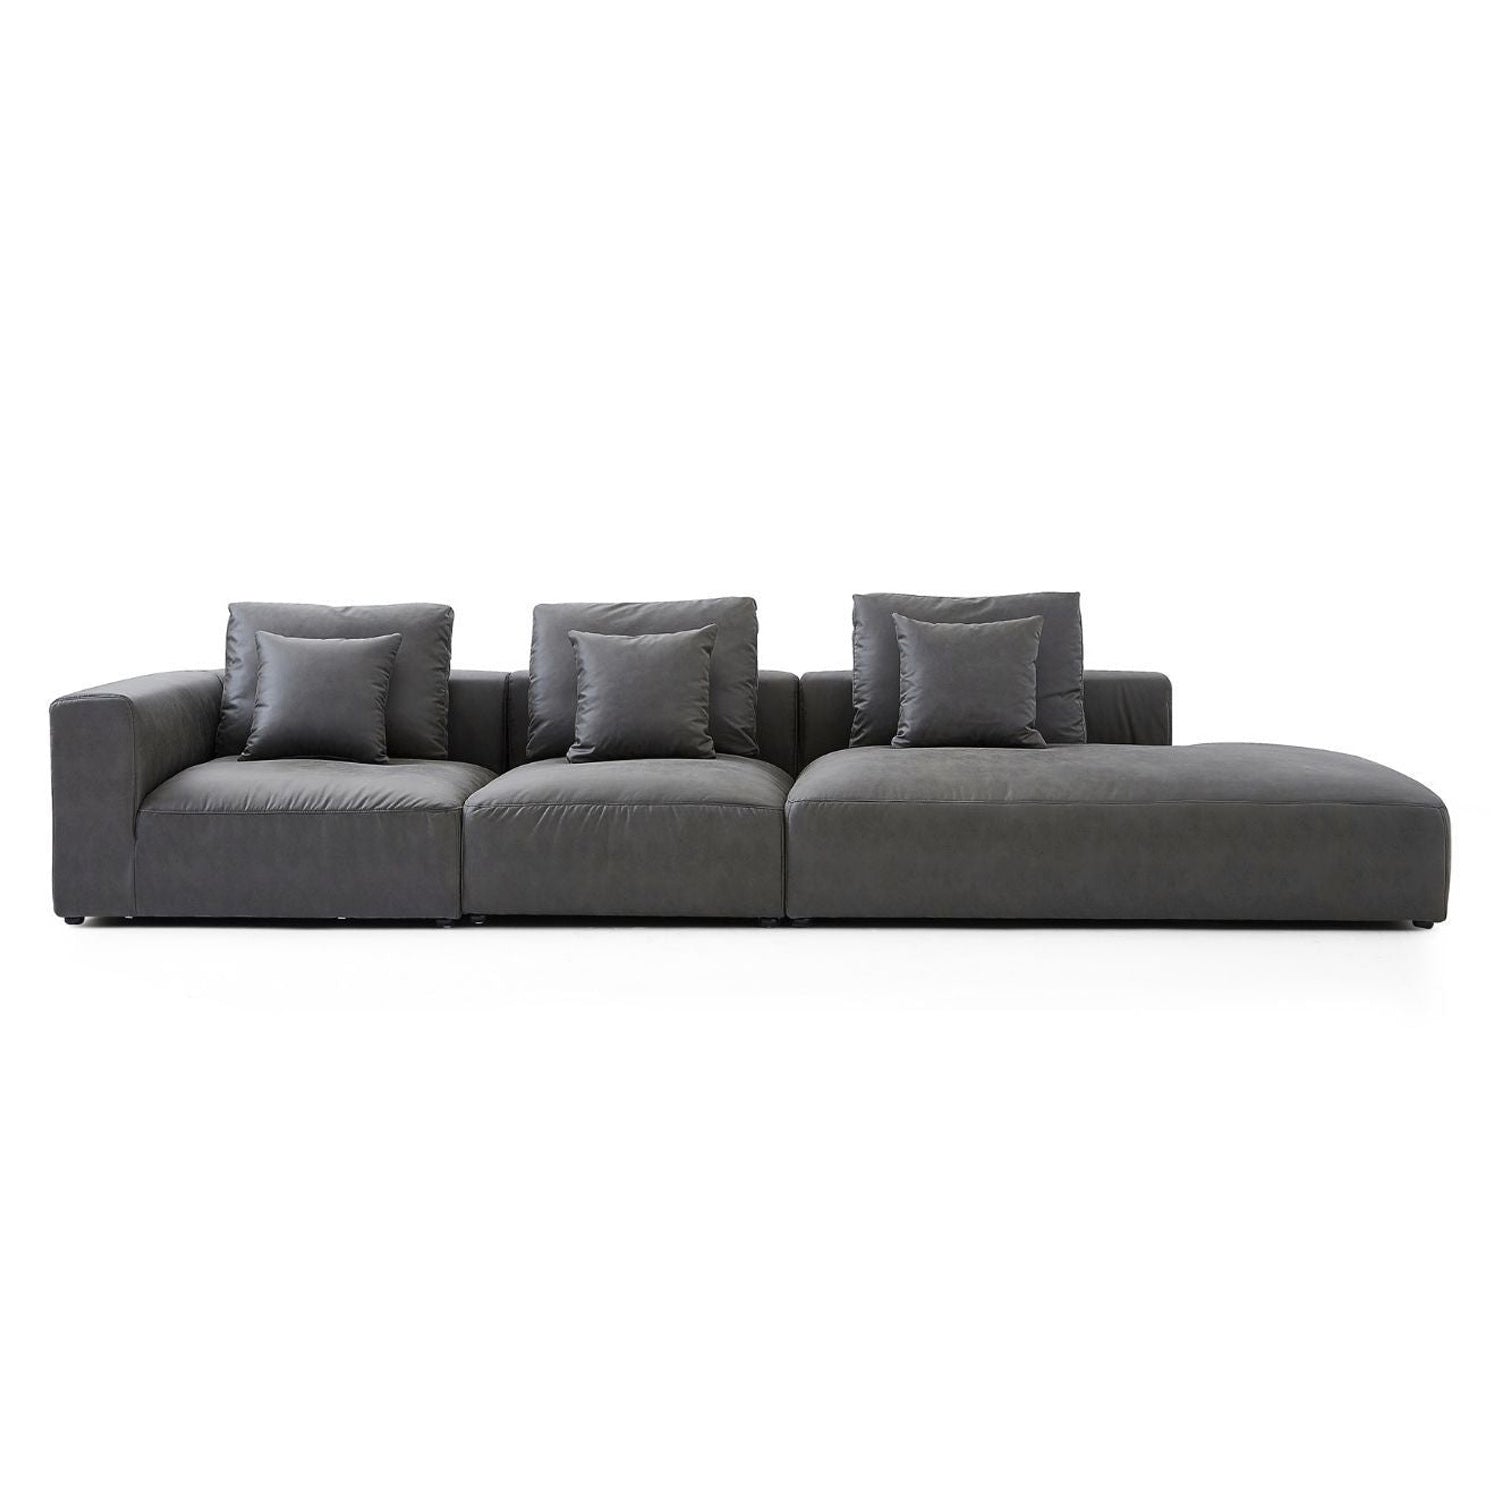 The 5th Sofa